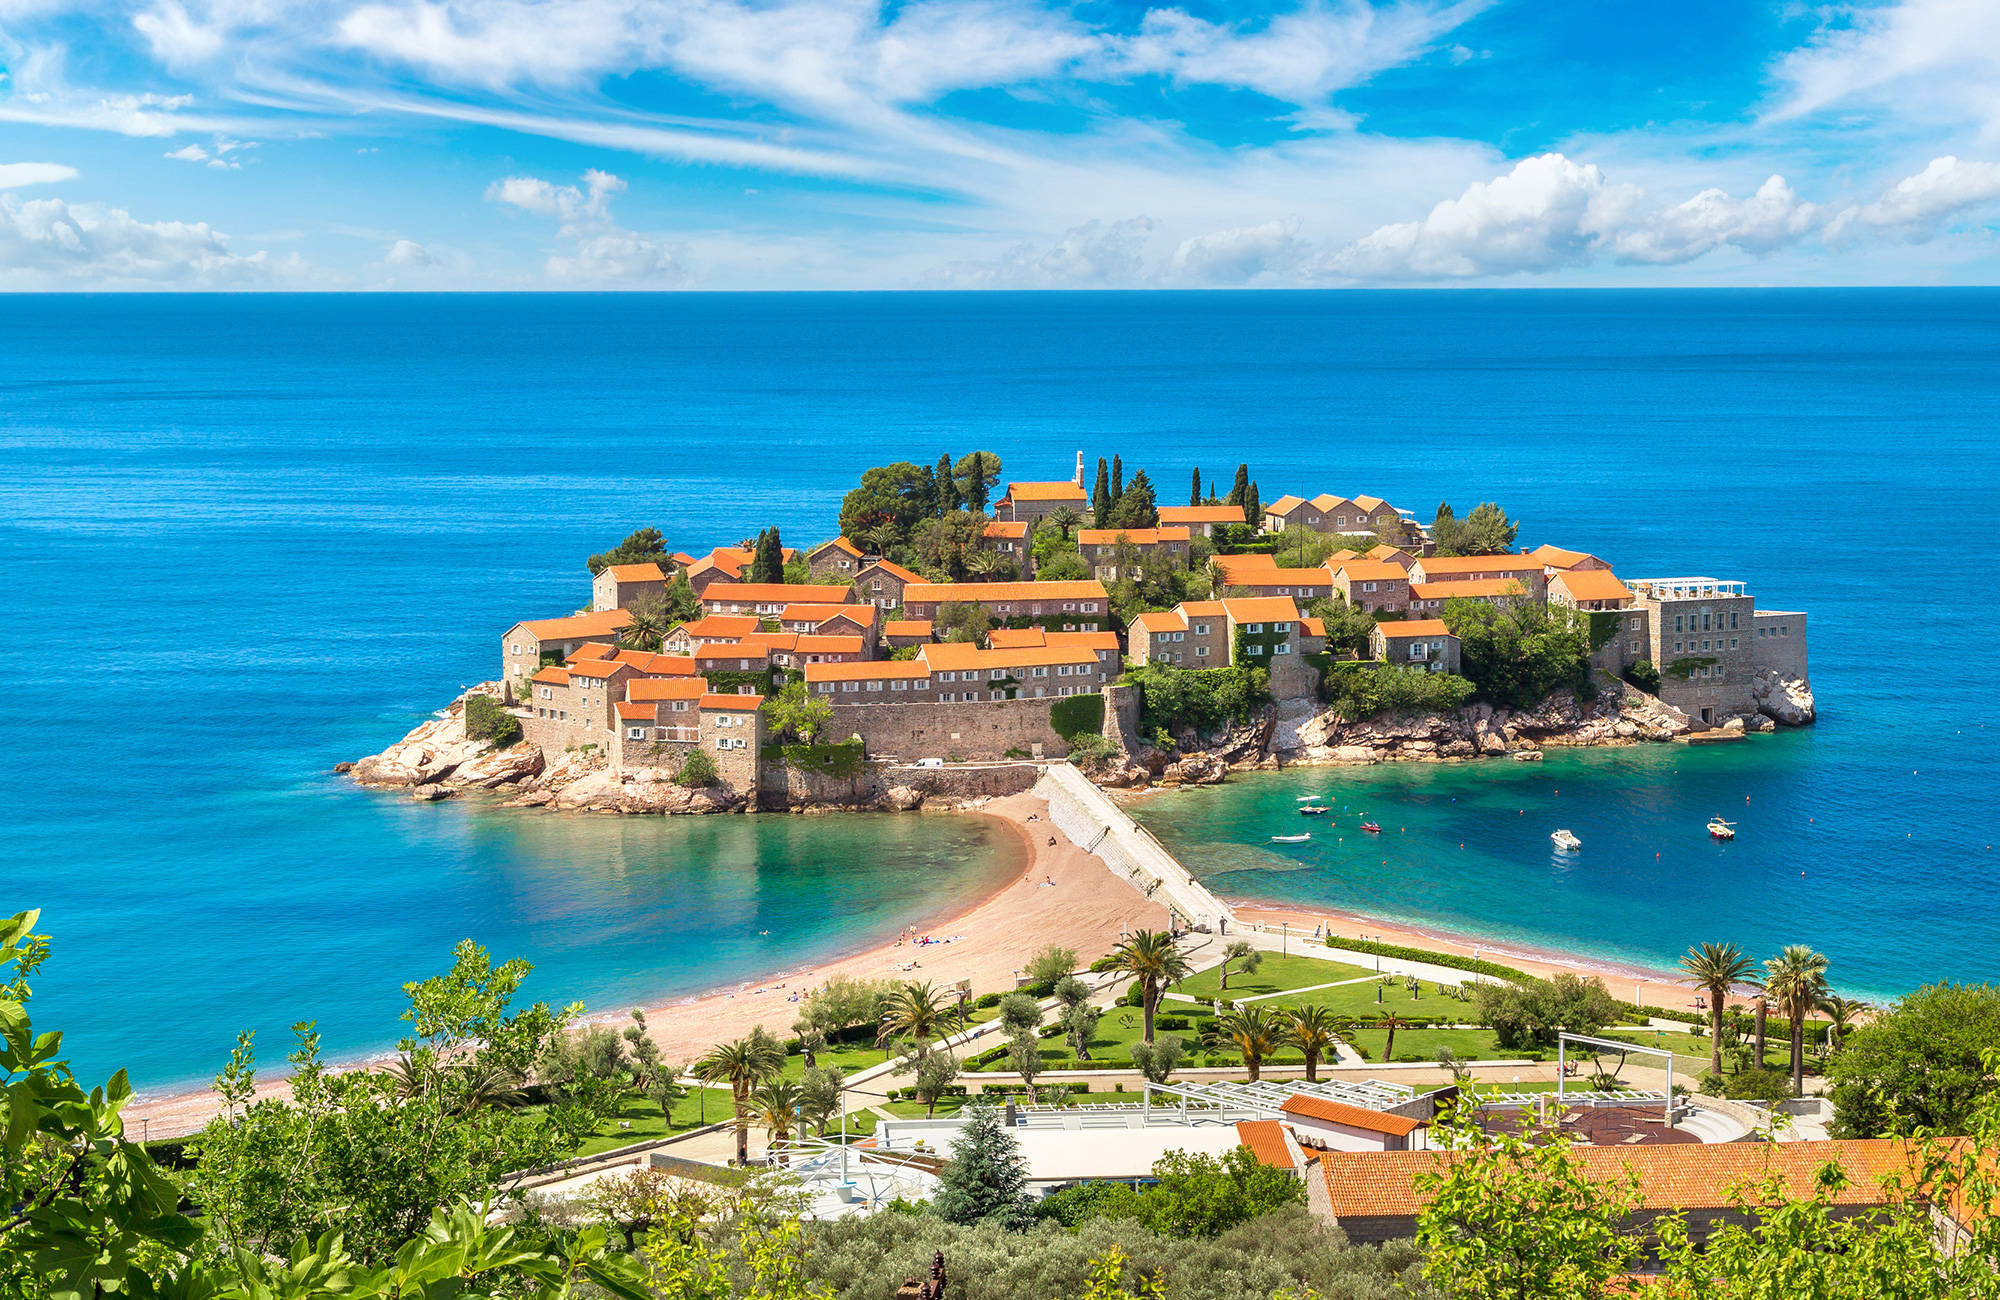 Sveti Stefan Island i Budva under en resa till montenegro